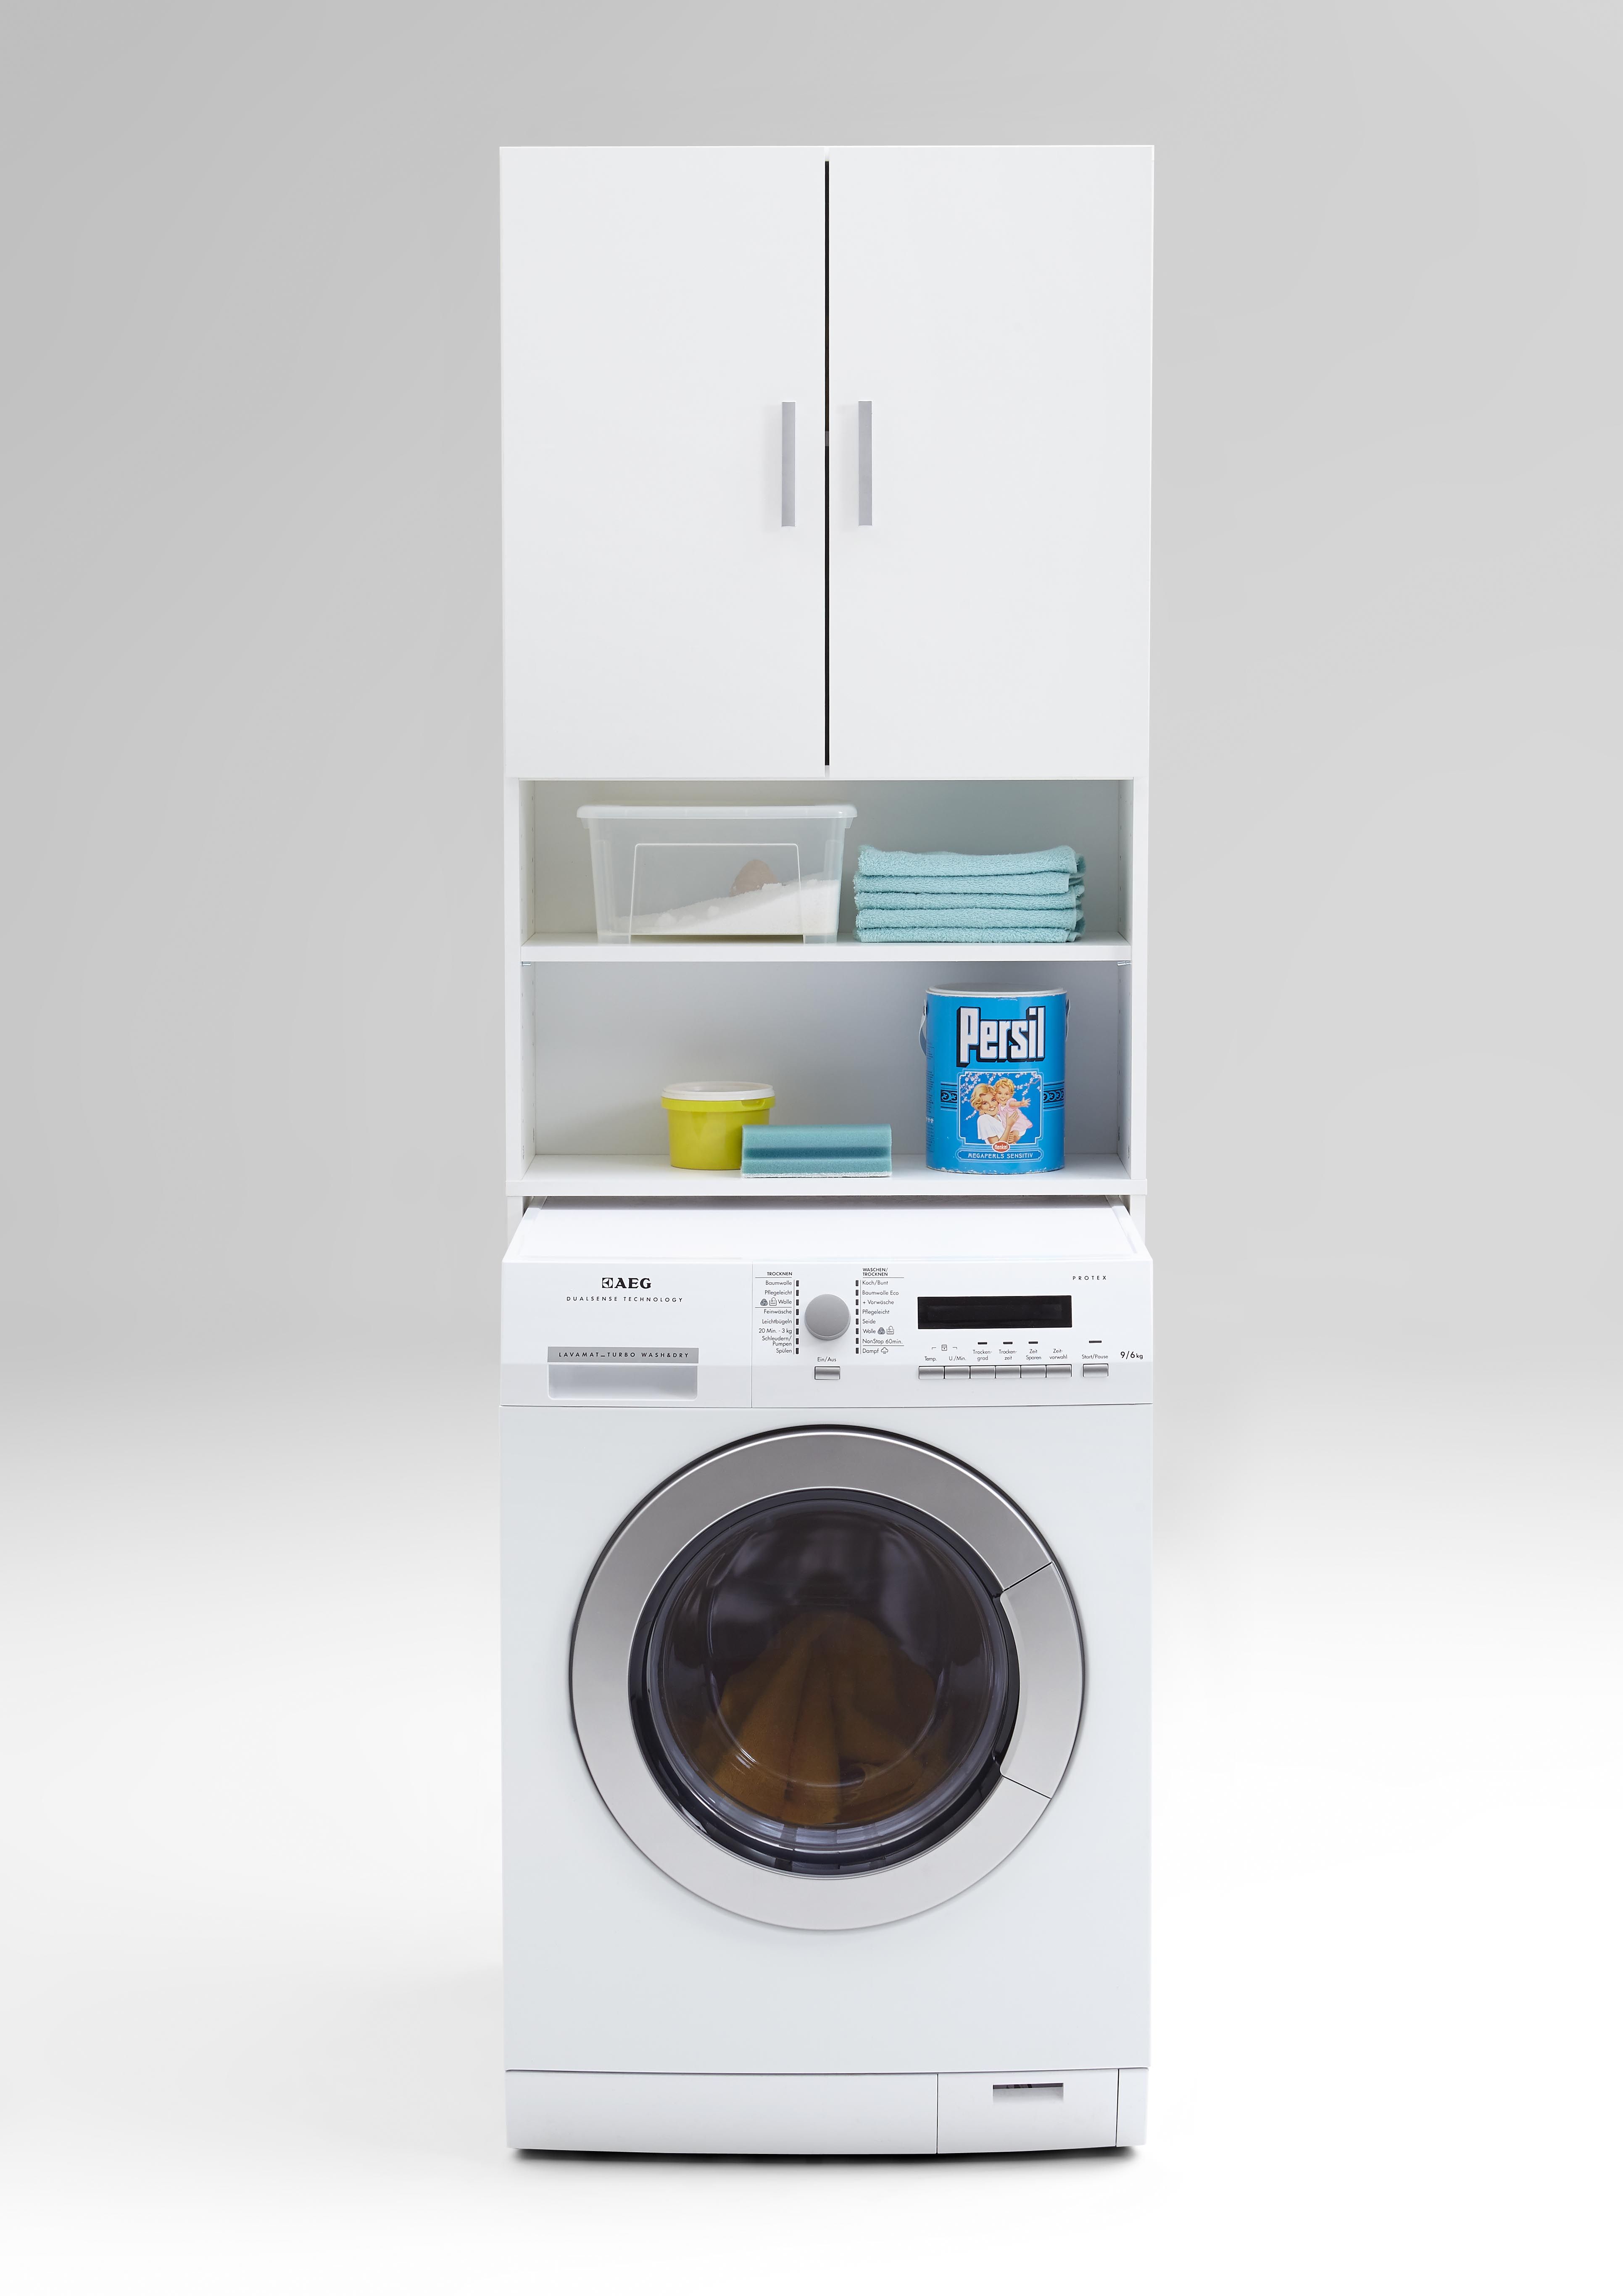 | Schrank Modern Olbia - Waschmaschine FMD Emob die für